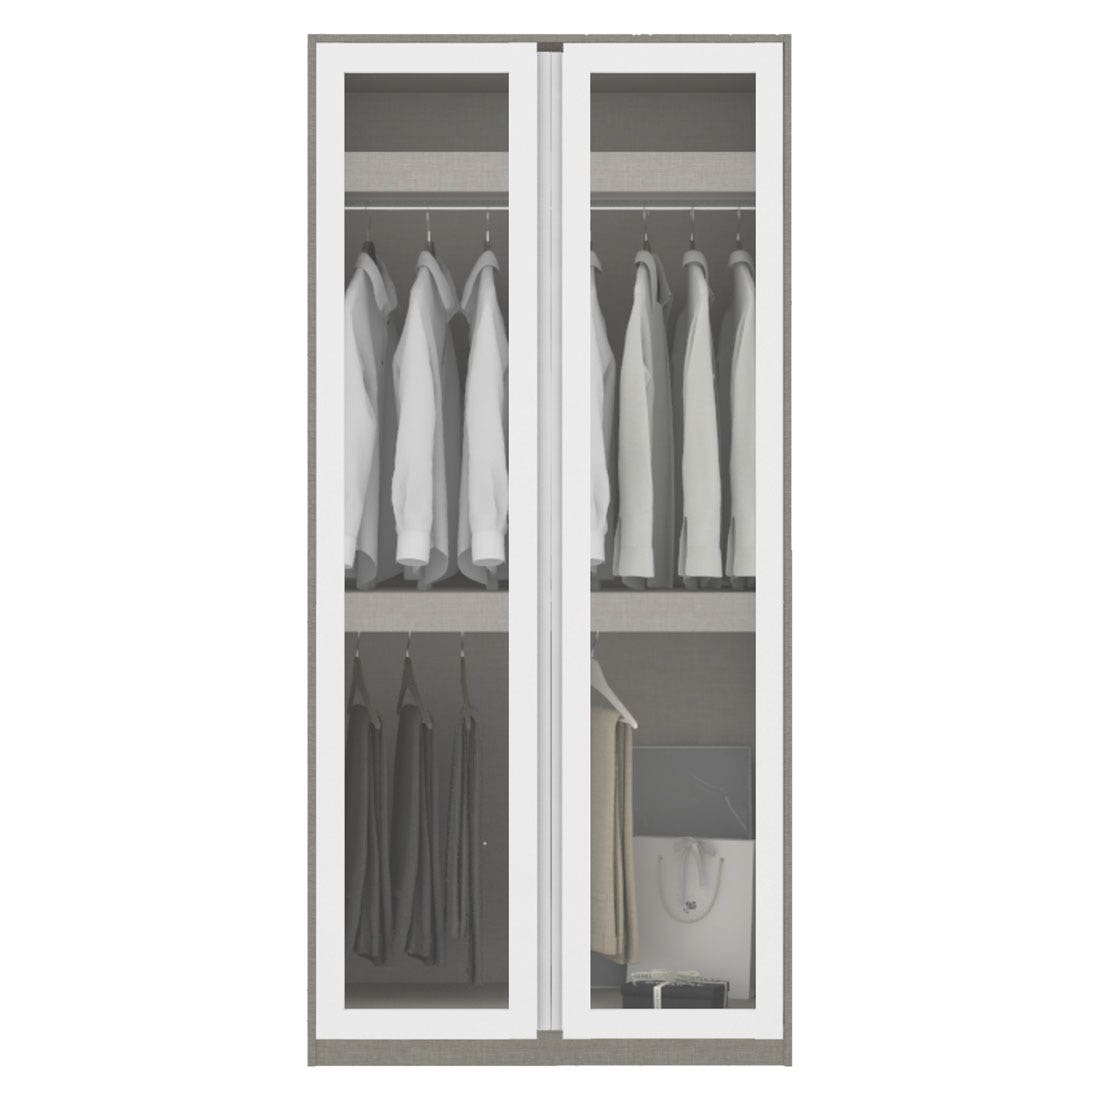 ตู้เสื้อผ้า แขวนบน-ล่าง OP-B ขนาด 100 ซม. รุ่น Blox สีขาว&กระจกใส1